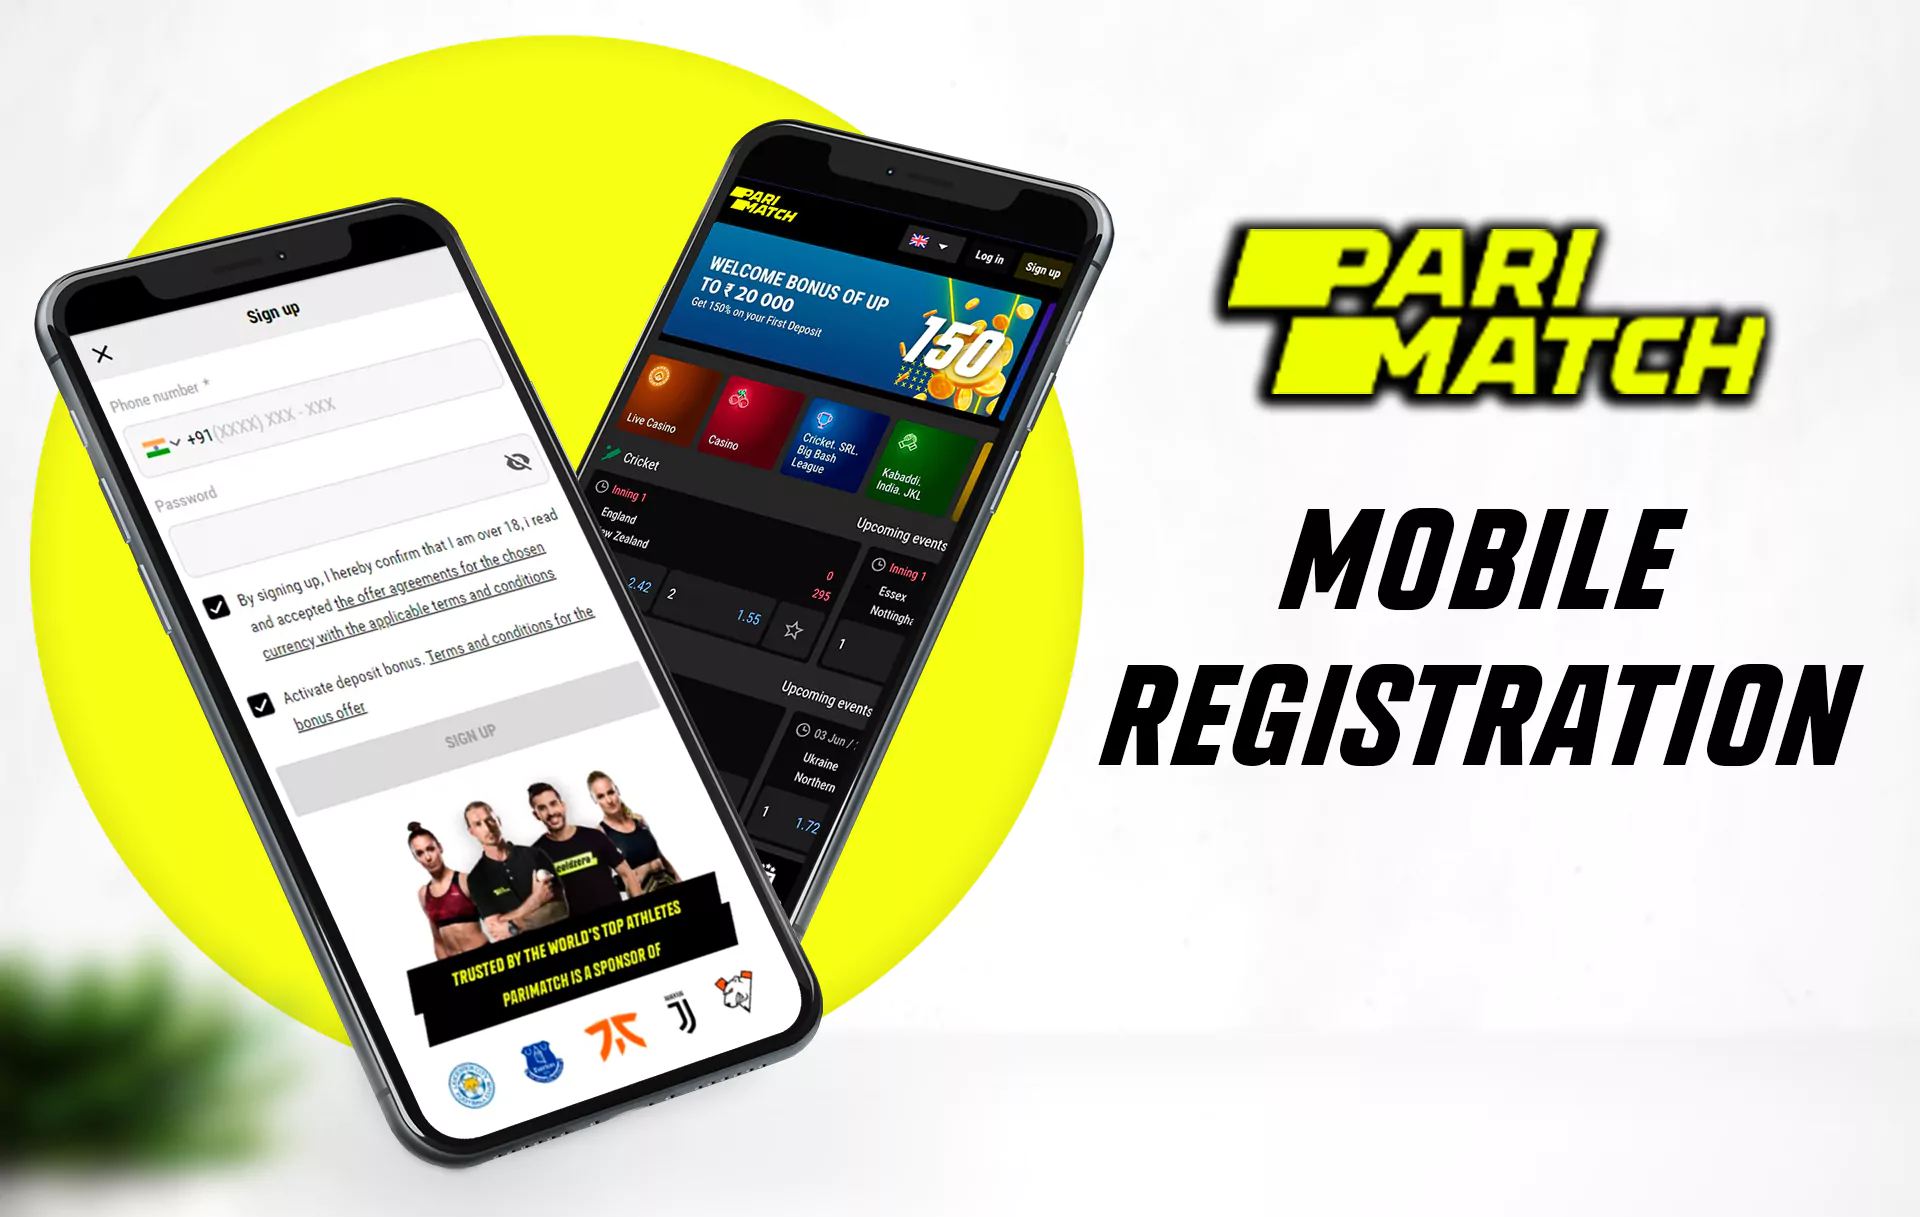 You can esily register via the Parimatch mobile app.